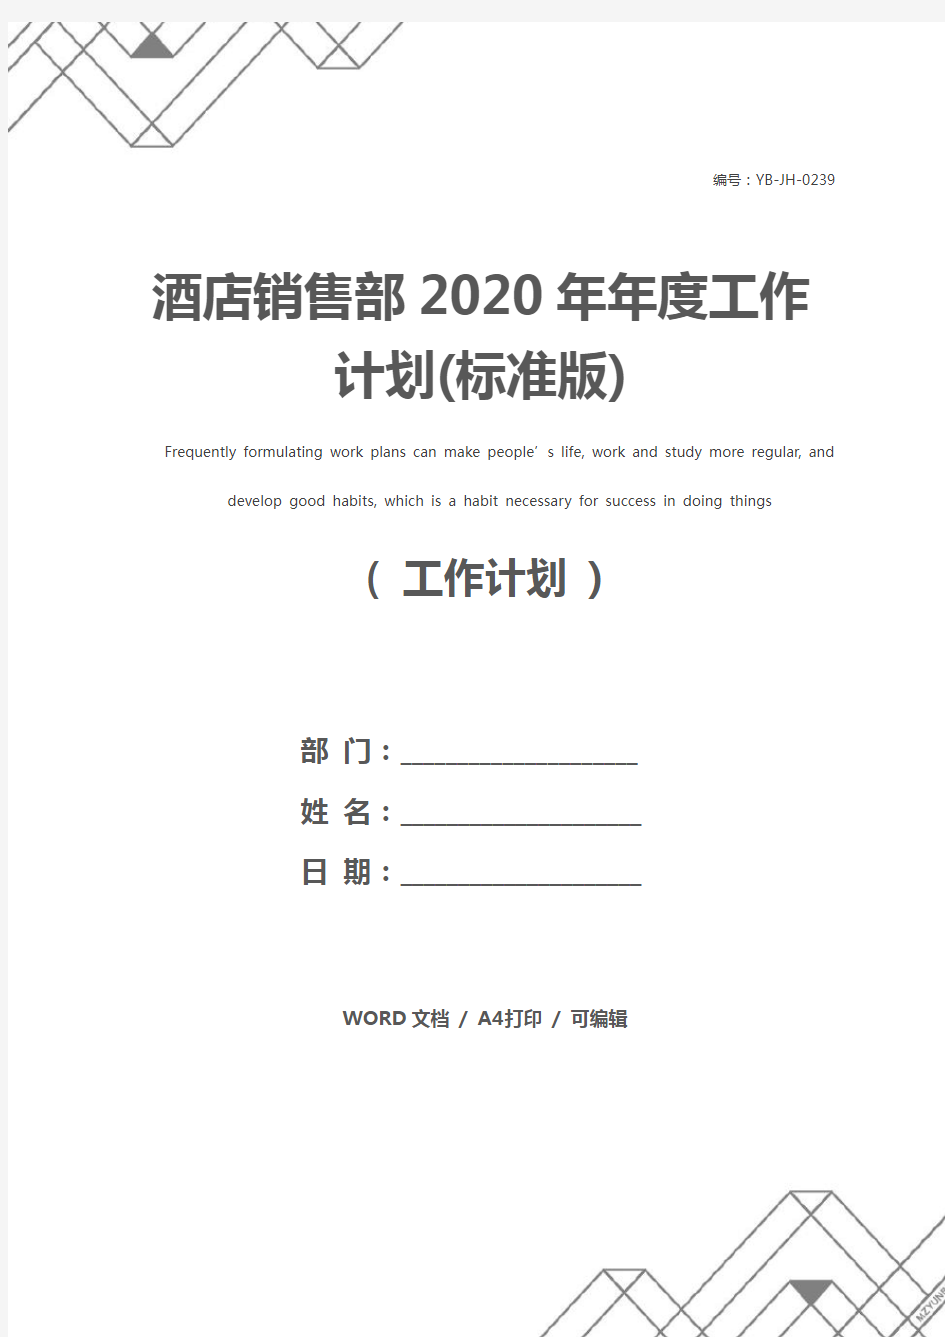 酒店销售部2020年年度工作计划(标准版)